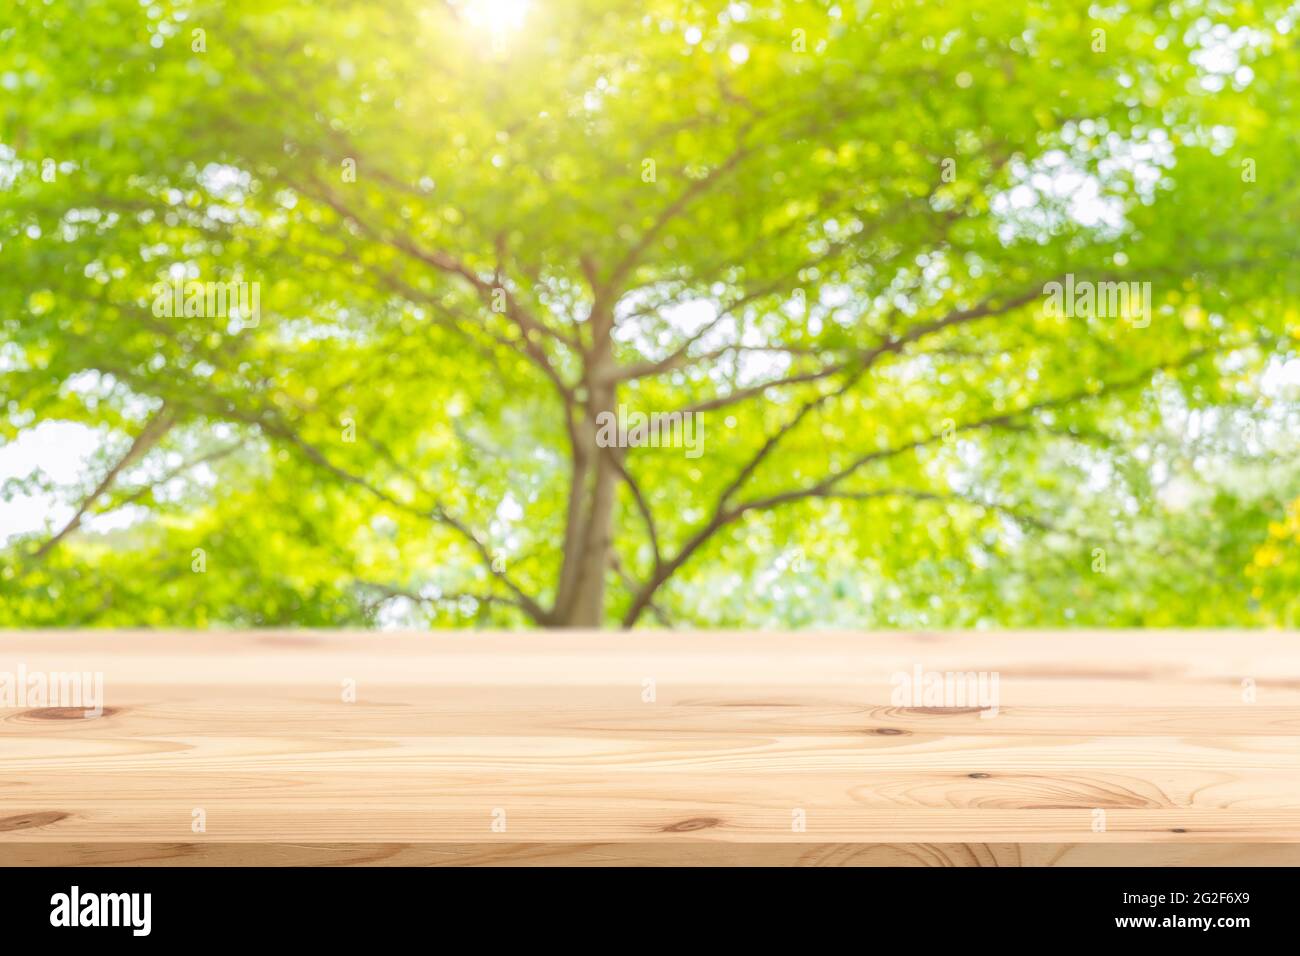 Hölzerne Tischplatte mit unscharfen grünen Baum frische Natur Hintergrund für Montage Display Produkte Werbefläche. Stockfoto